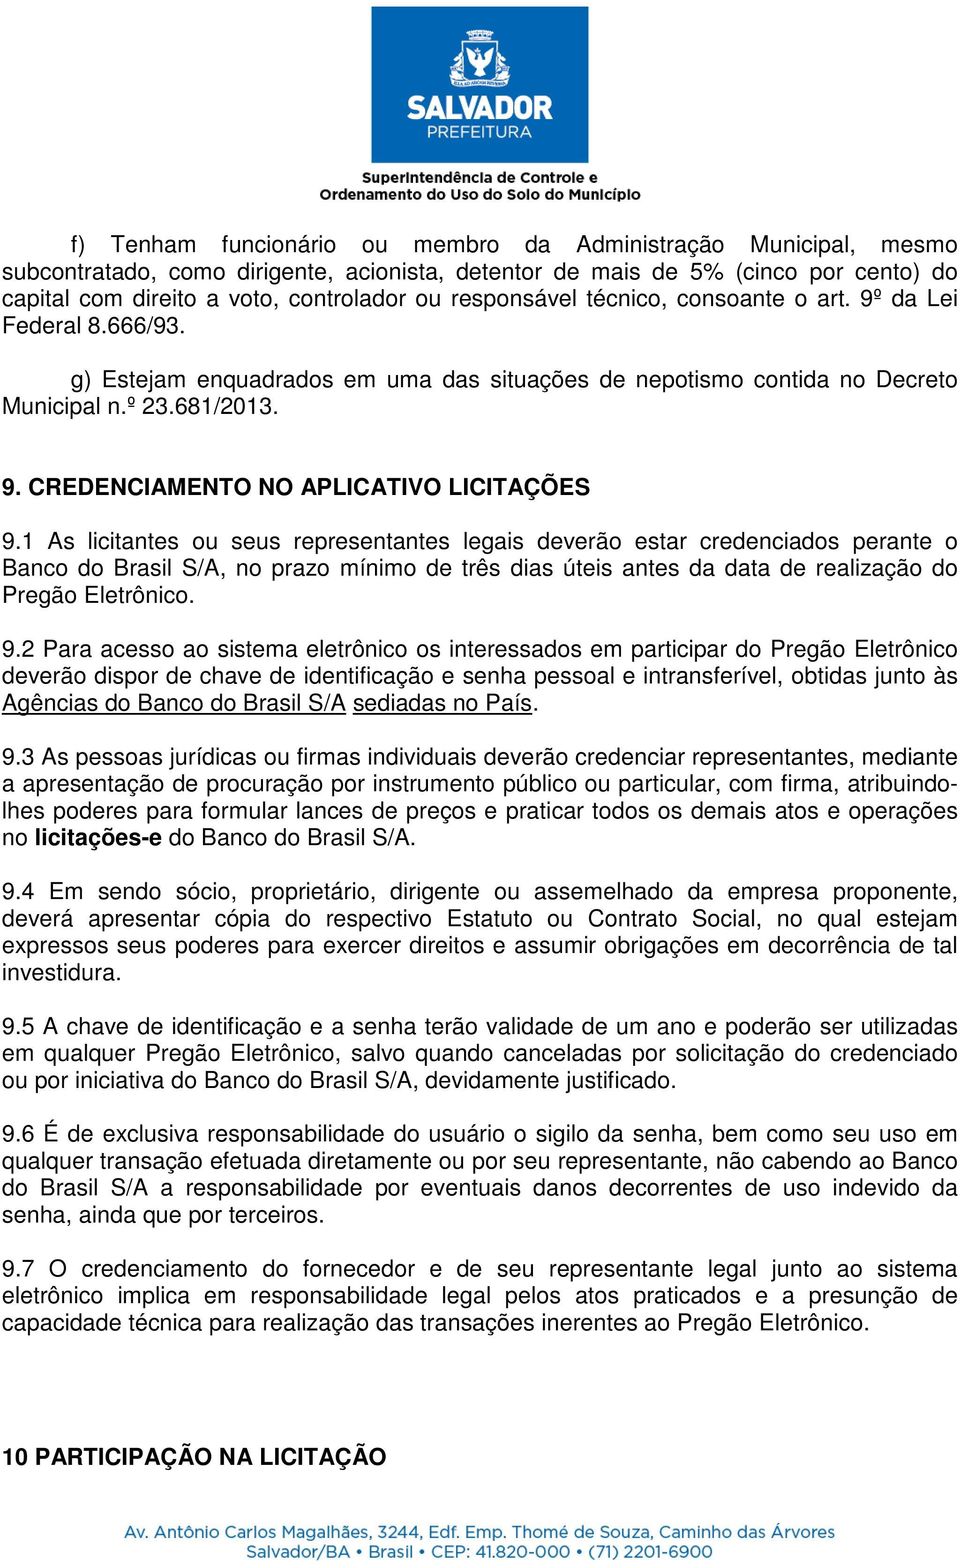 1 As licitantes ou seus representantes legais deverão estar credenciados perante o Banco do Brasil S/A, no prazo mínimo de três dias úteis antes da data de realização do Pregão Eletrônico. 9.